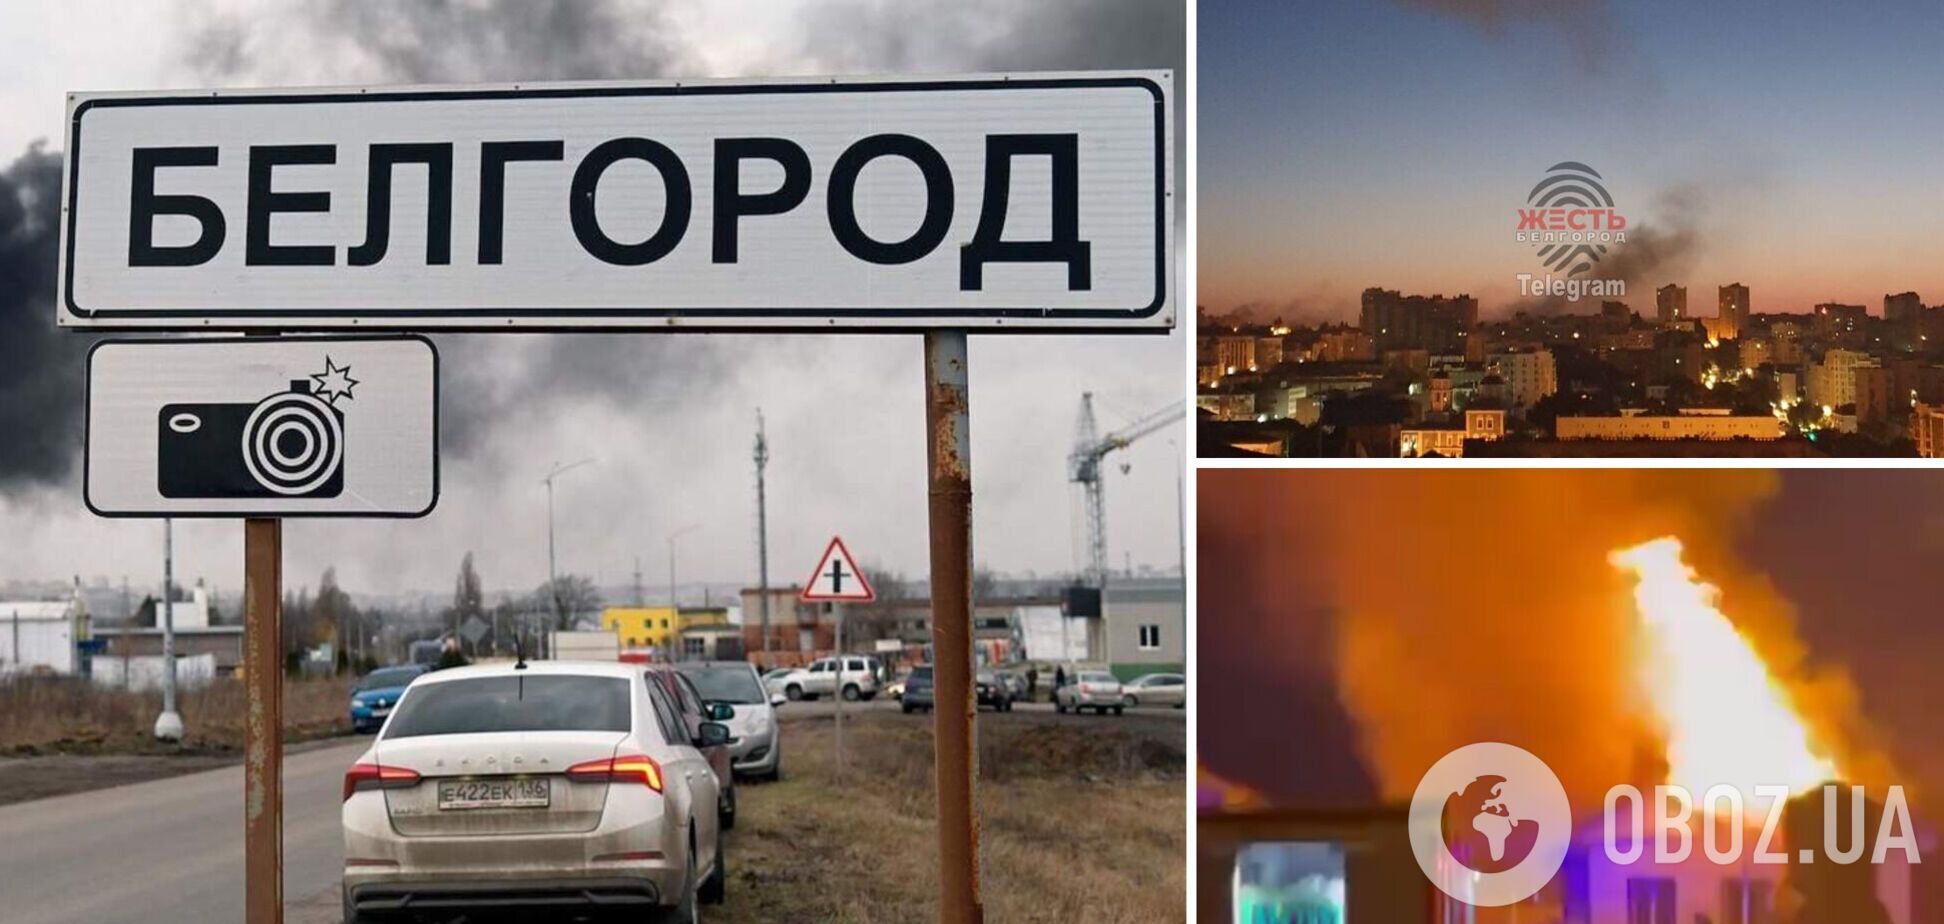 В Белгороде прогремели взрывы, которые власть называет 'громкими звуками'